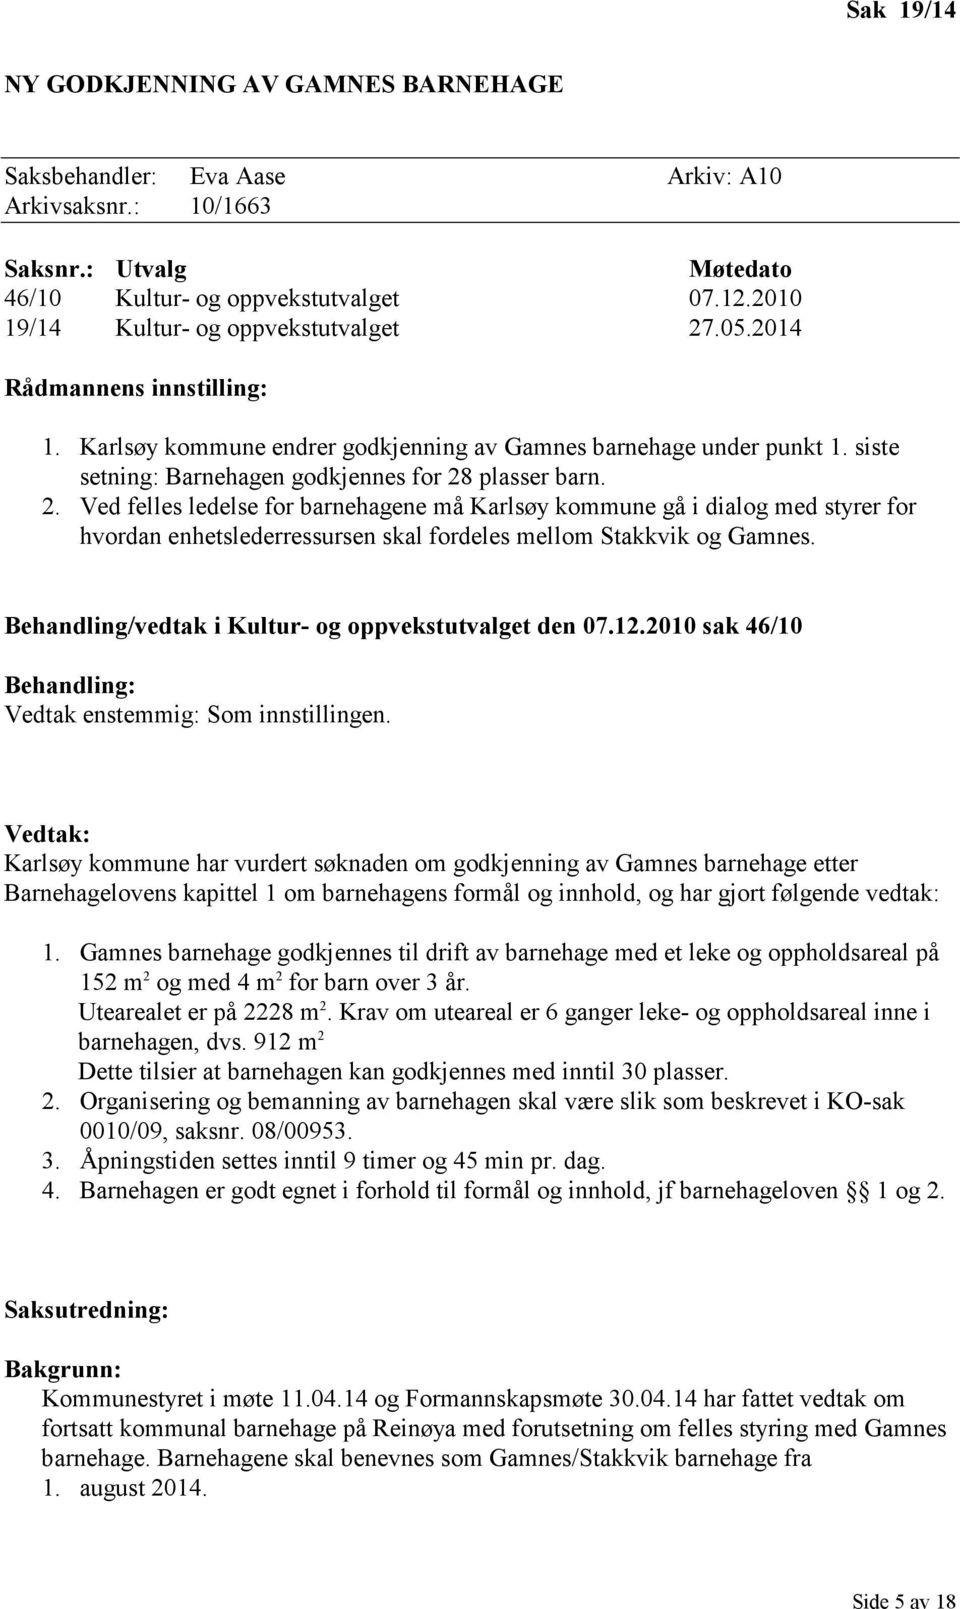 plasser barn. 2. Ved felles ledelse for barnehagene må Karlsøy kommune gå i dialog med styrer for hvordan enhetslederressursen skal fordeles mellom Stakkvik og Gamnes.